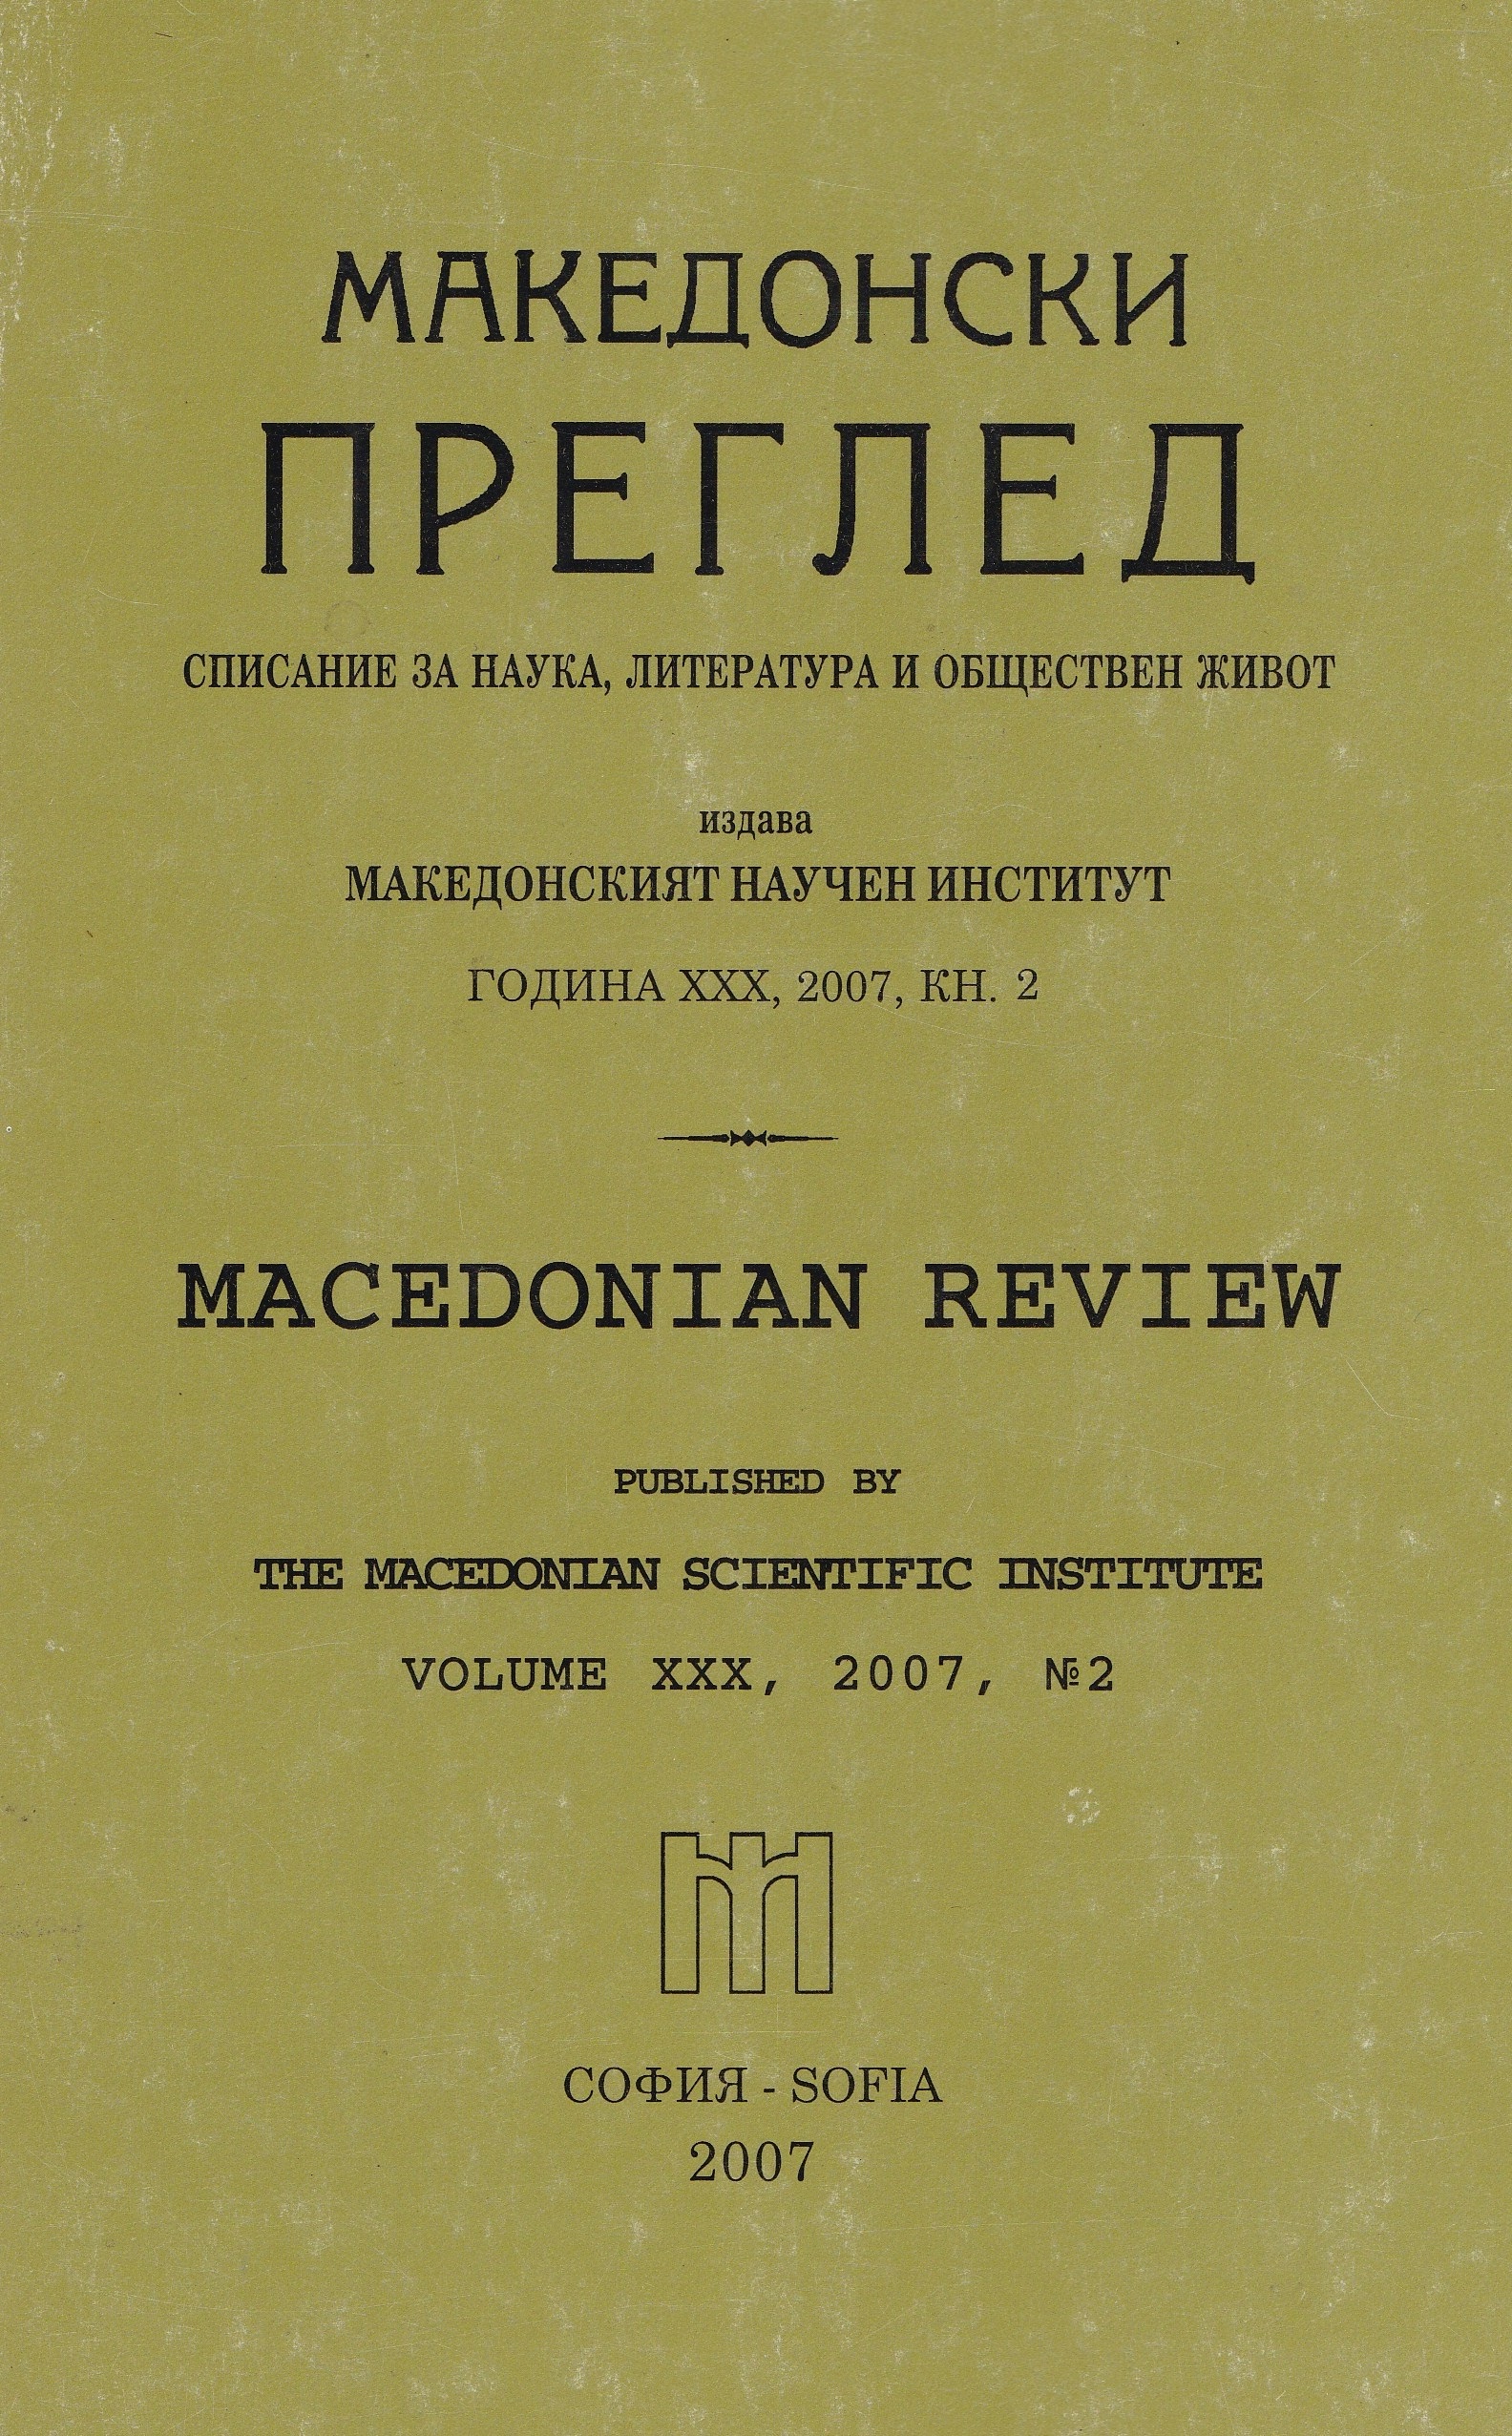 Трибуна на македонските българи в Новия свят (80 години от създаването на в. „Македонска трибуна")